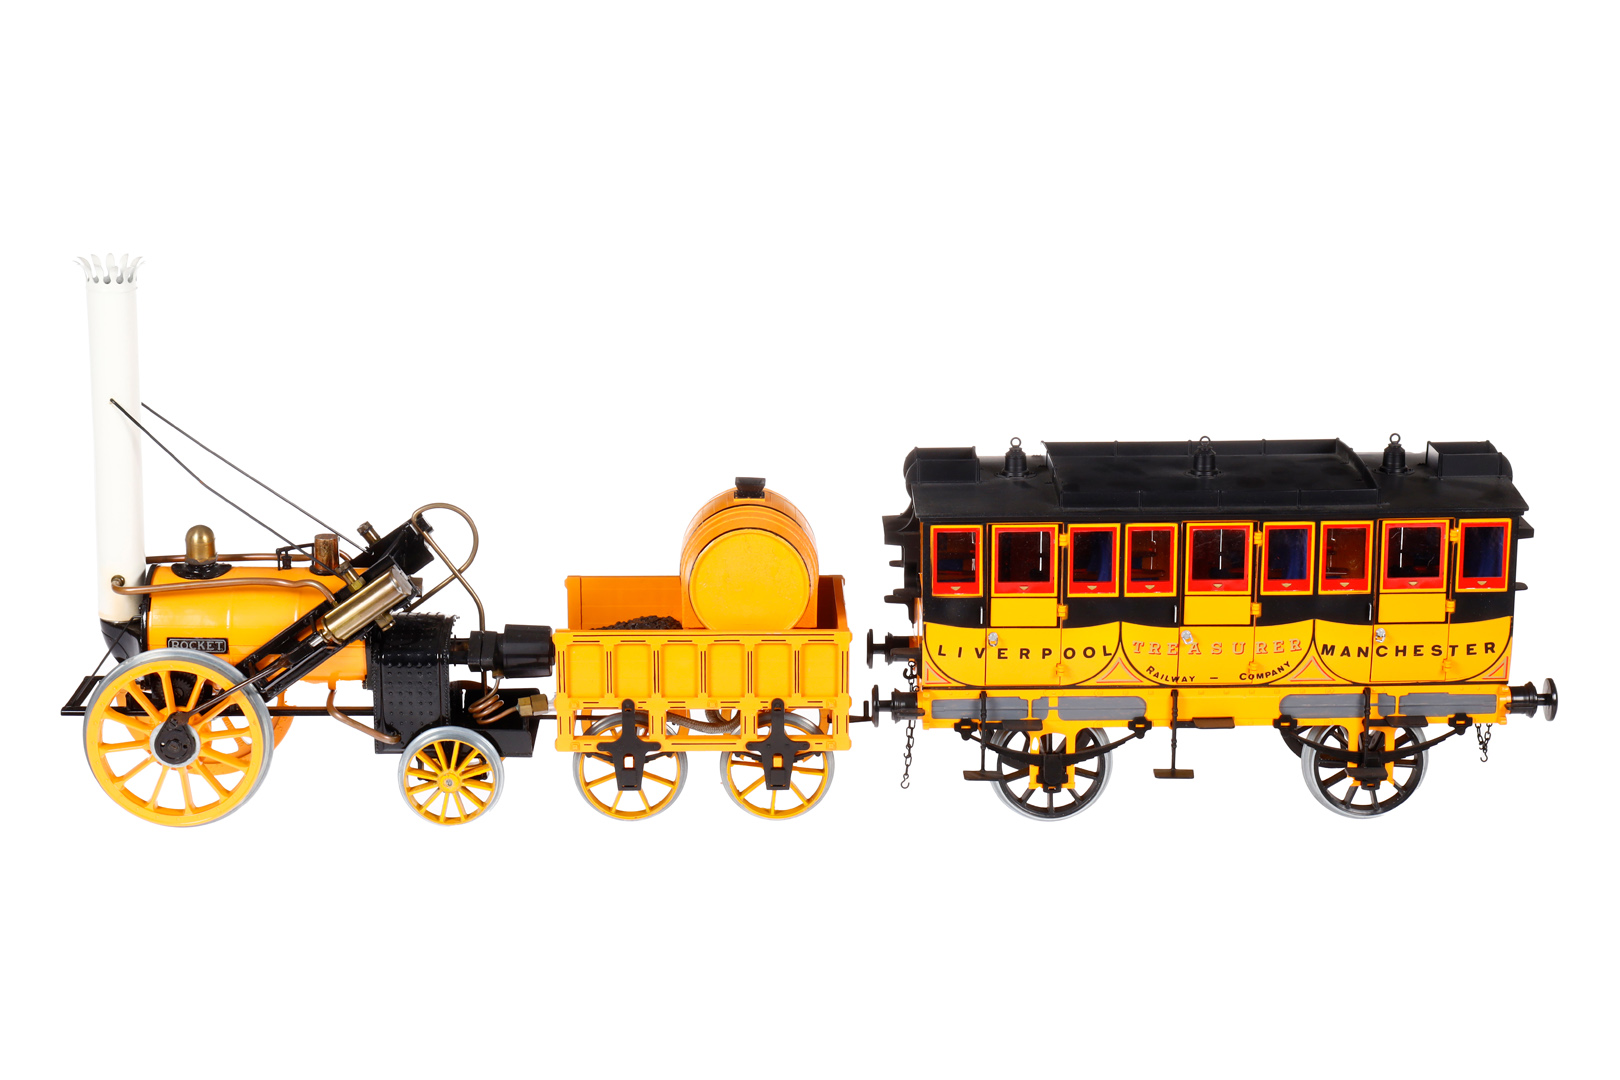 Hornby Rocket-Zug, Spurweite 90, dampfbetrieben, mit Lok, Tender und Wagen, Alterungsspuren,